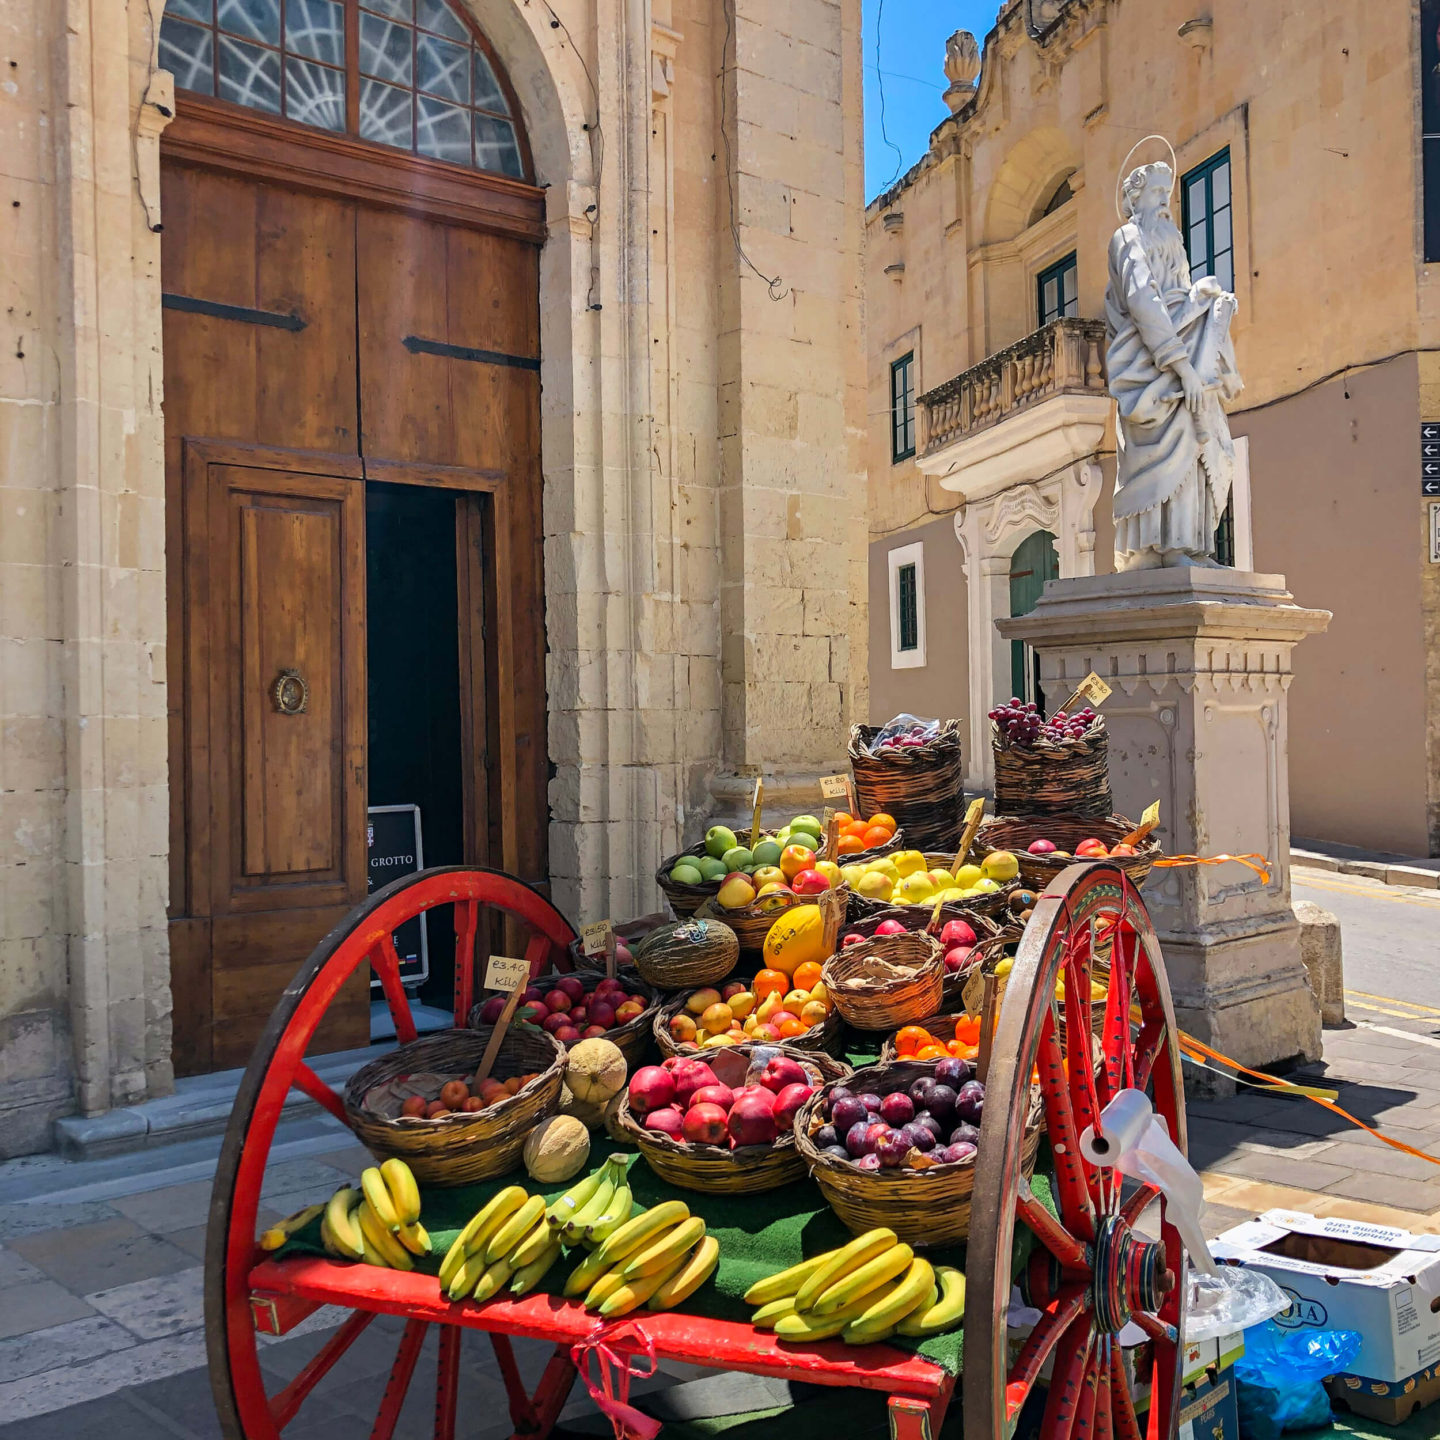 Fruit truck in Rabat